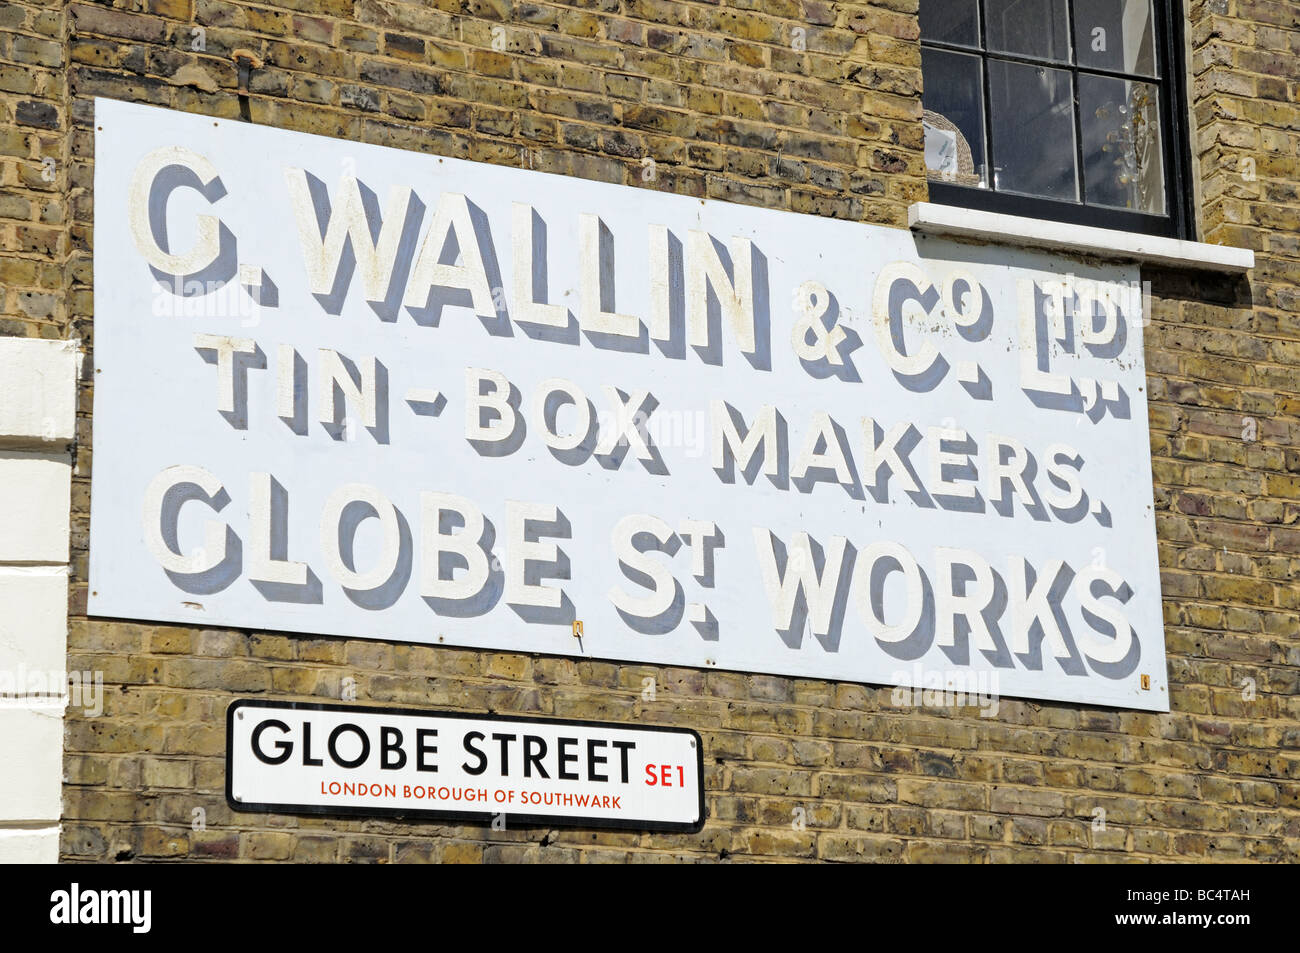 Vieille enseigne sur mur pour tin box décideurs C Wallin Globe Street Southwark Londres SE1 Banque D'Images